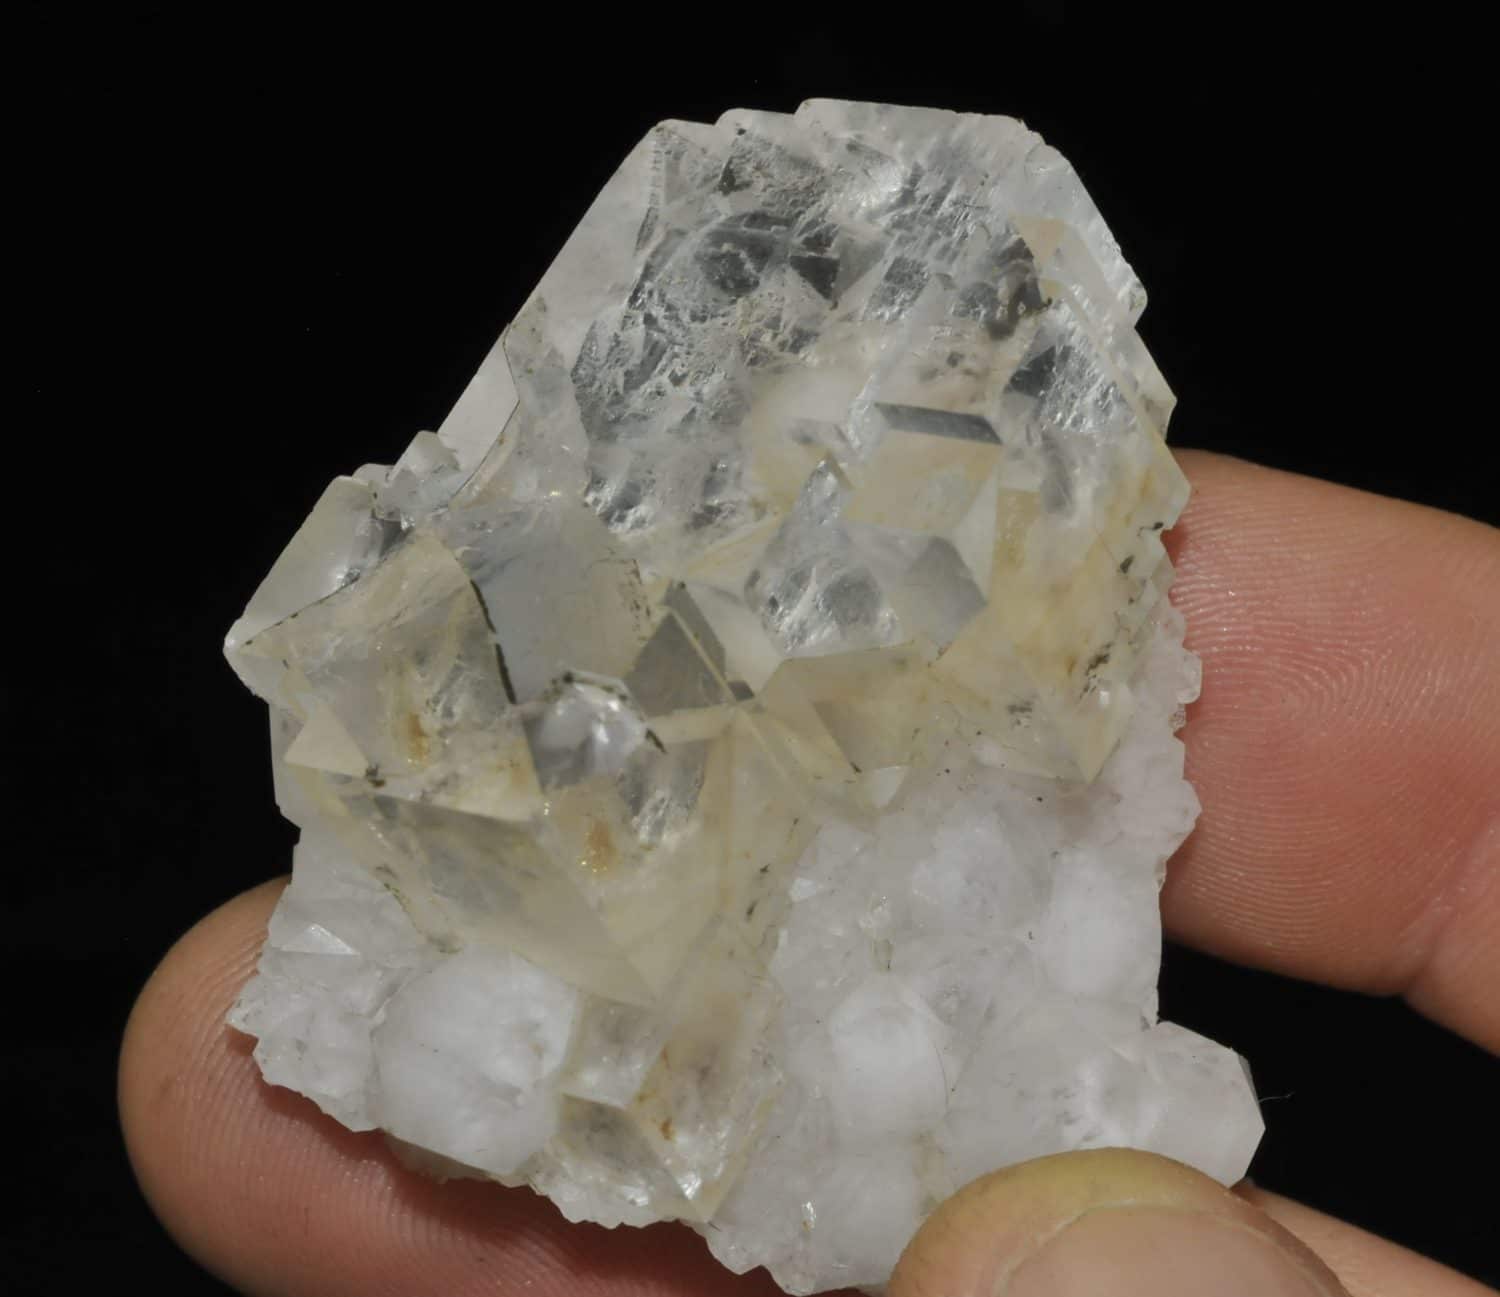 Fluorite blanche de la mine de Montroc (Tarn).